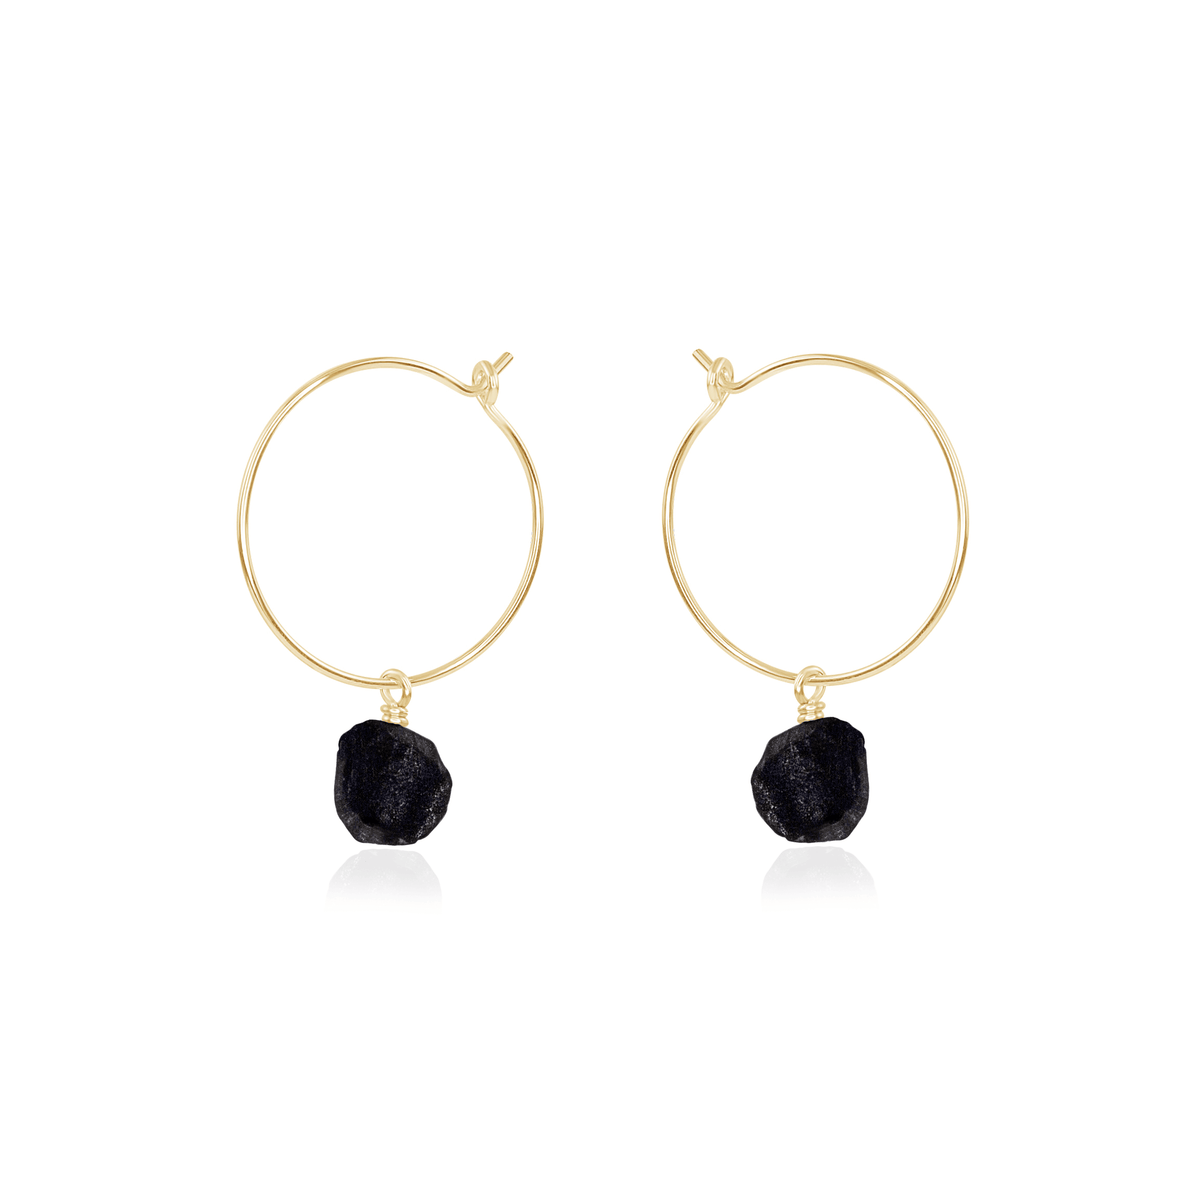 Raw Obsidian Gemstone Dangle Hoop Earrings - Raw Obsidian Gemstone Dangle Hoop Earrings - 14k Gold Fill - Luna Tide Handmade Crystal Jewellery